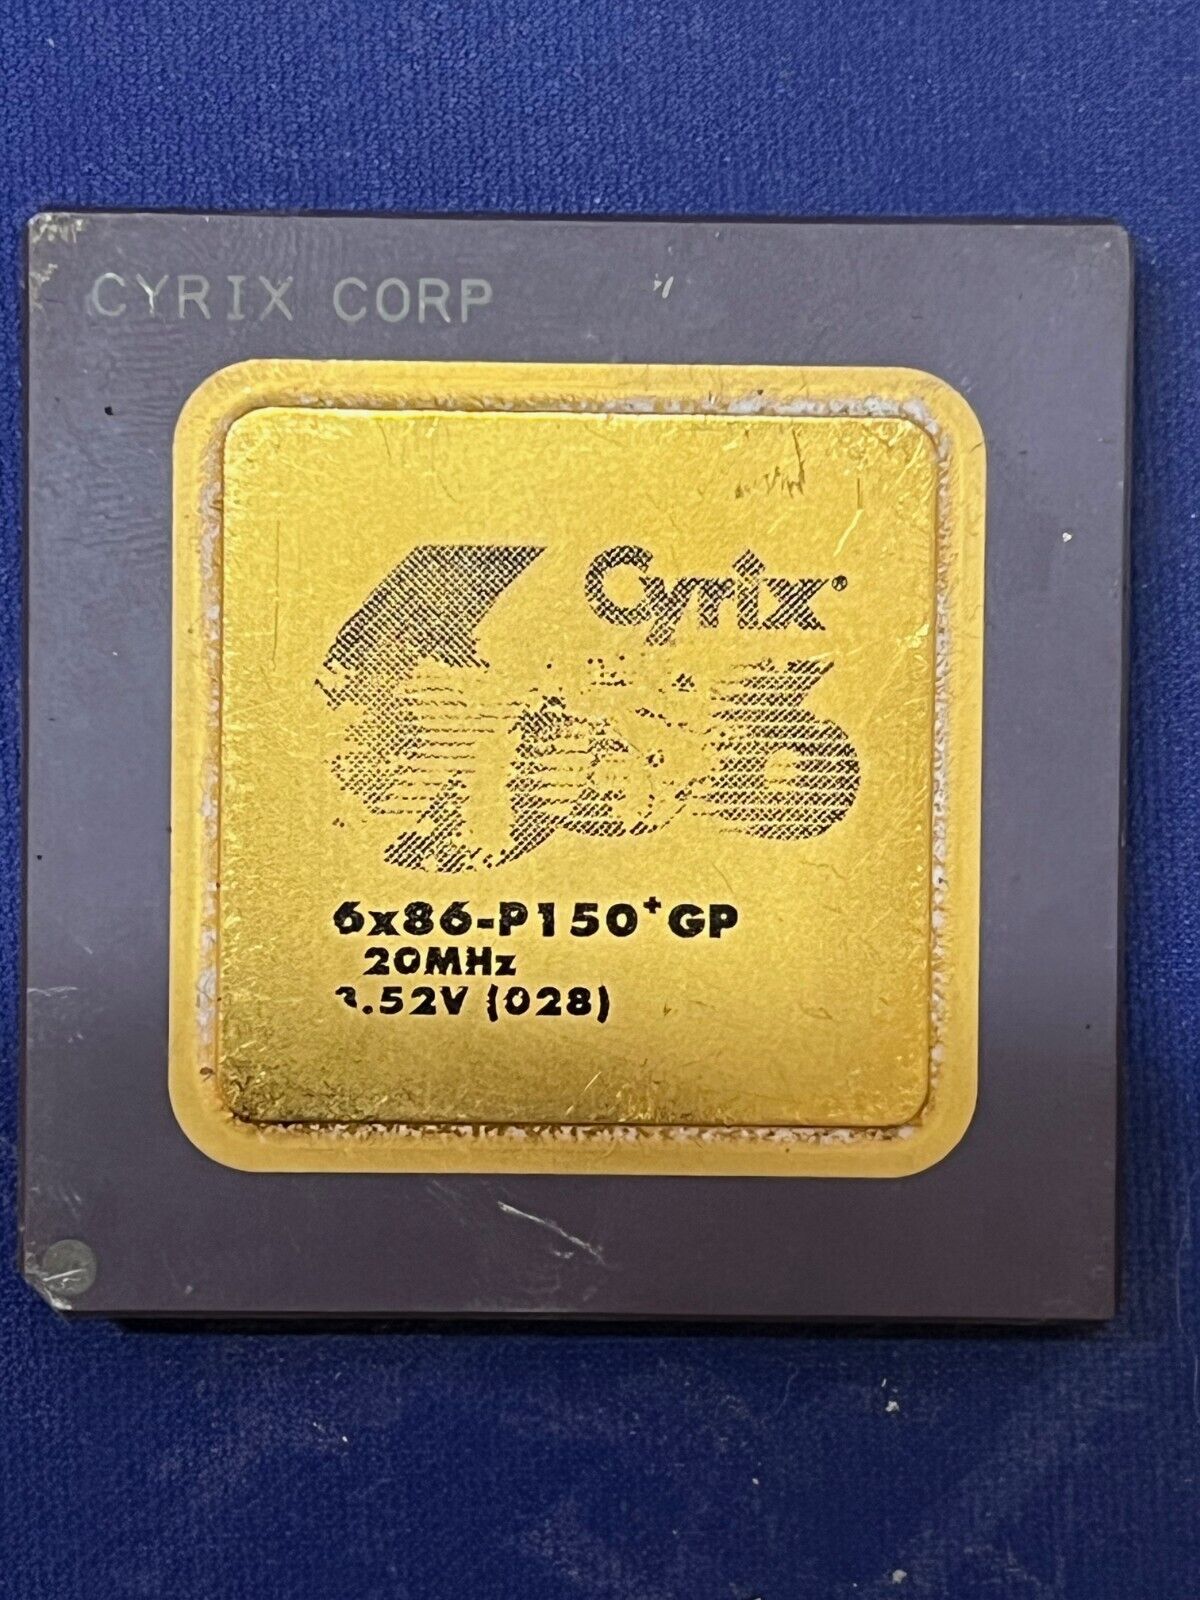 Cyrix 6x86-P150 GP 200MHz 3.52V 6x86 Rare Vintage CPU GOLD 